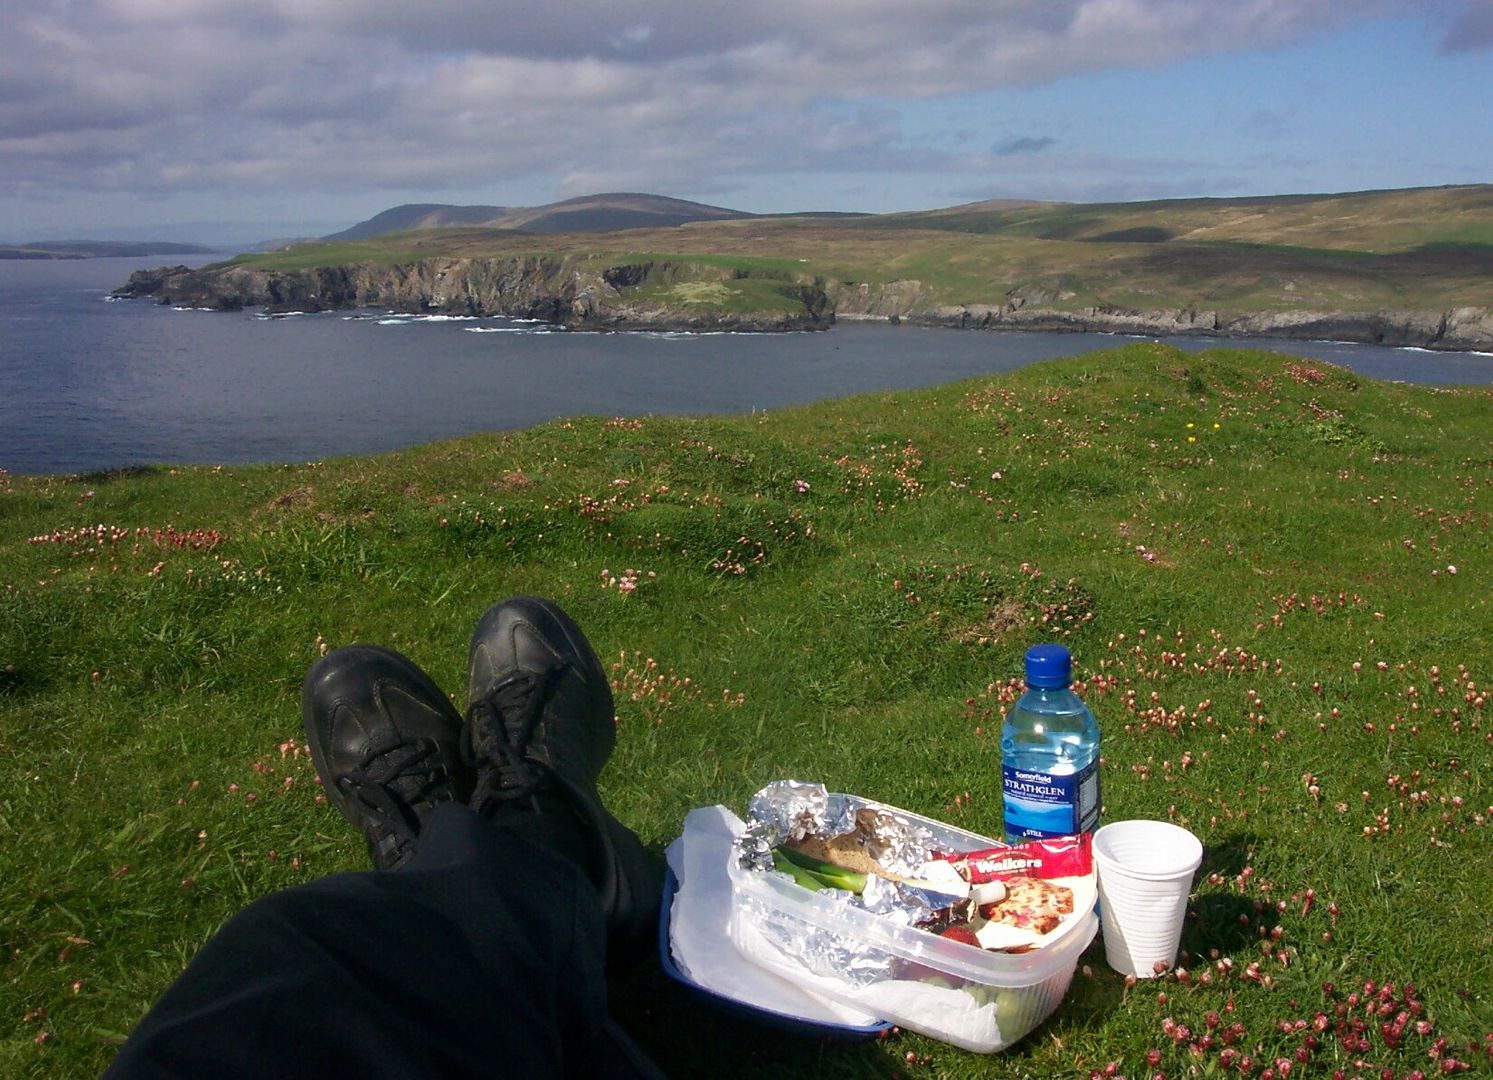 Shetland picnic